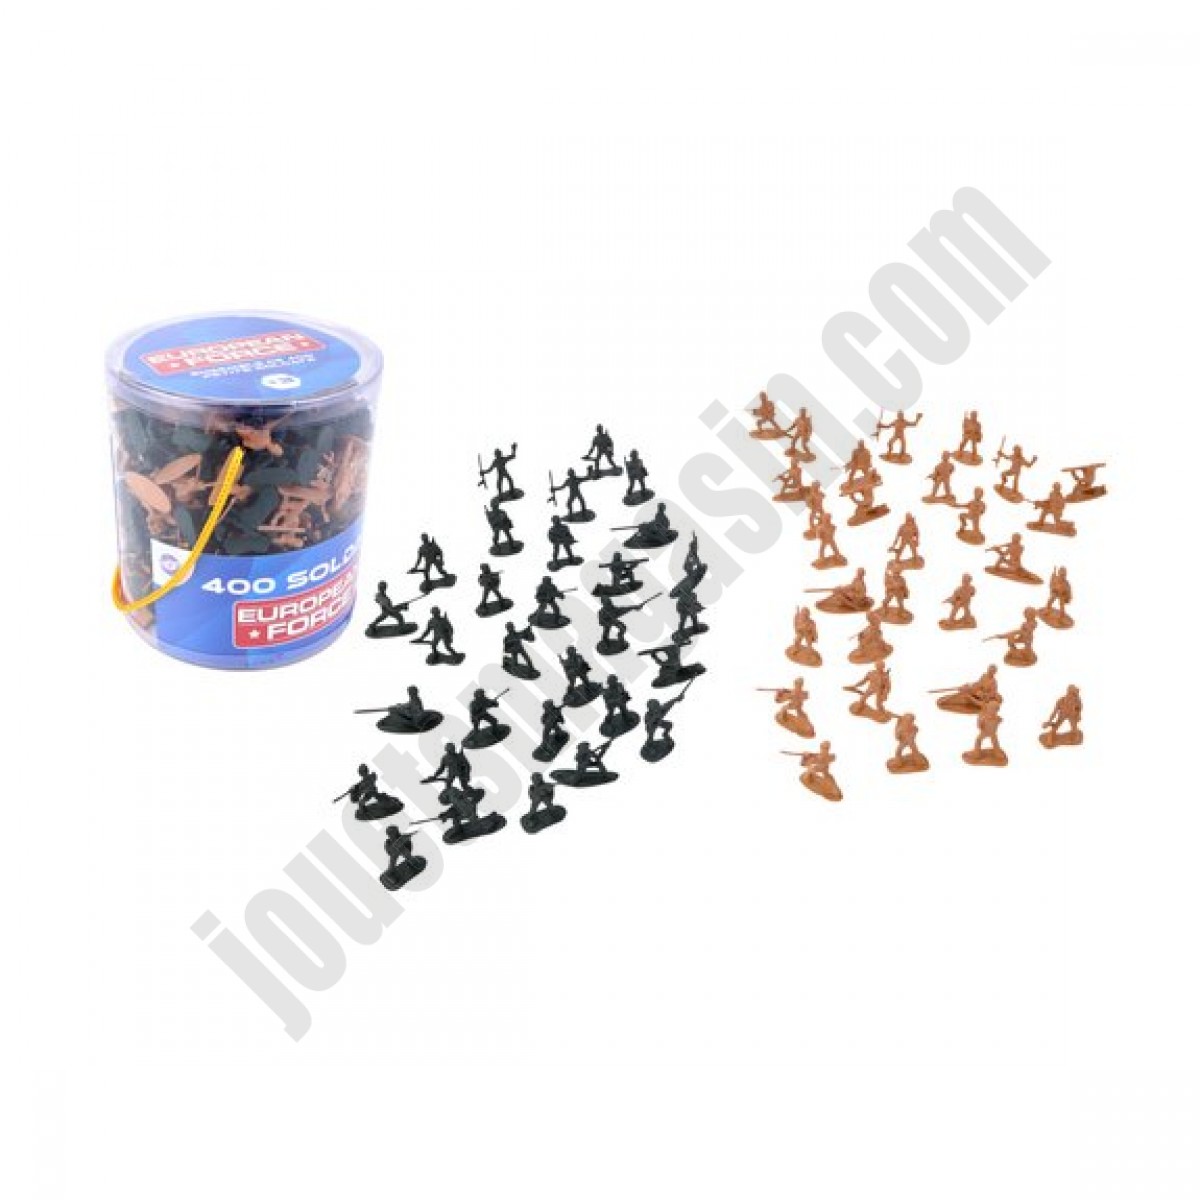 Coffret 400 figurines petits soldats 3,5 cm ◆◆◆ Nouveau - Coffret 400 figurines petits soldats 3,5 cm ◆◆◆ Nouveau